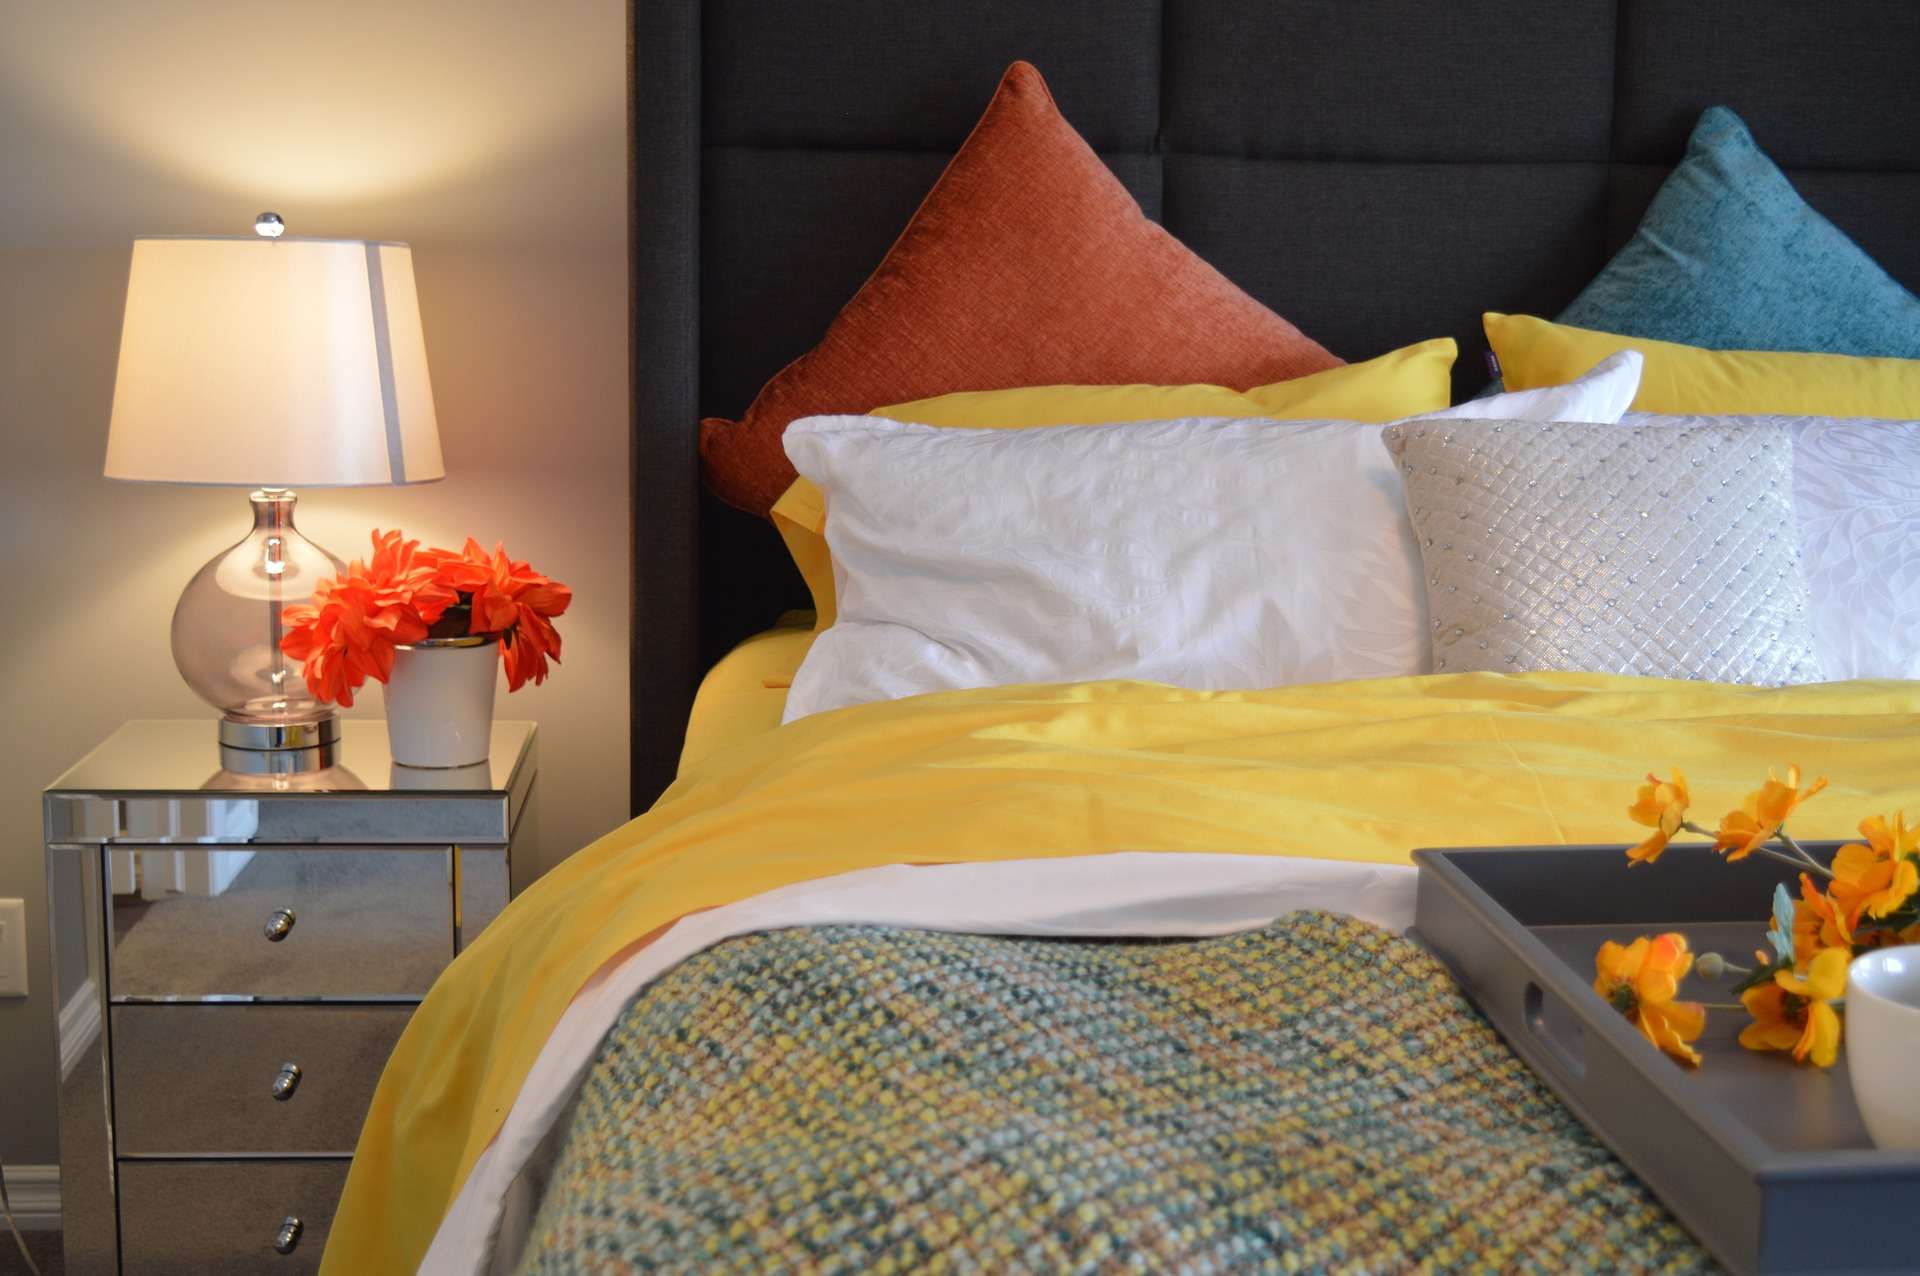 Conseils pour réussir le choix de la couleur parfaite de linge de lit